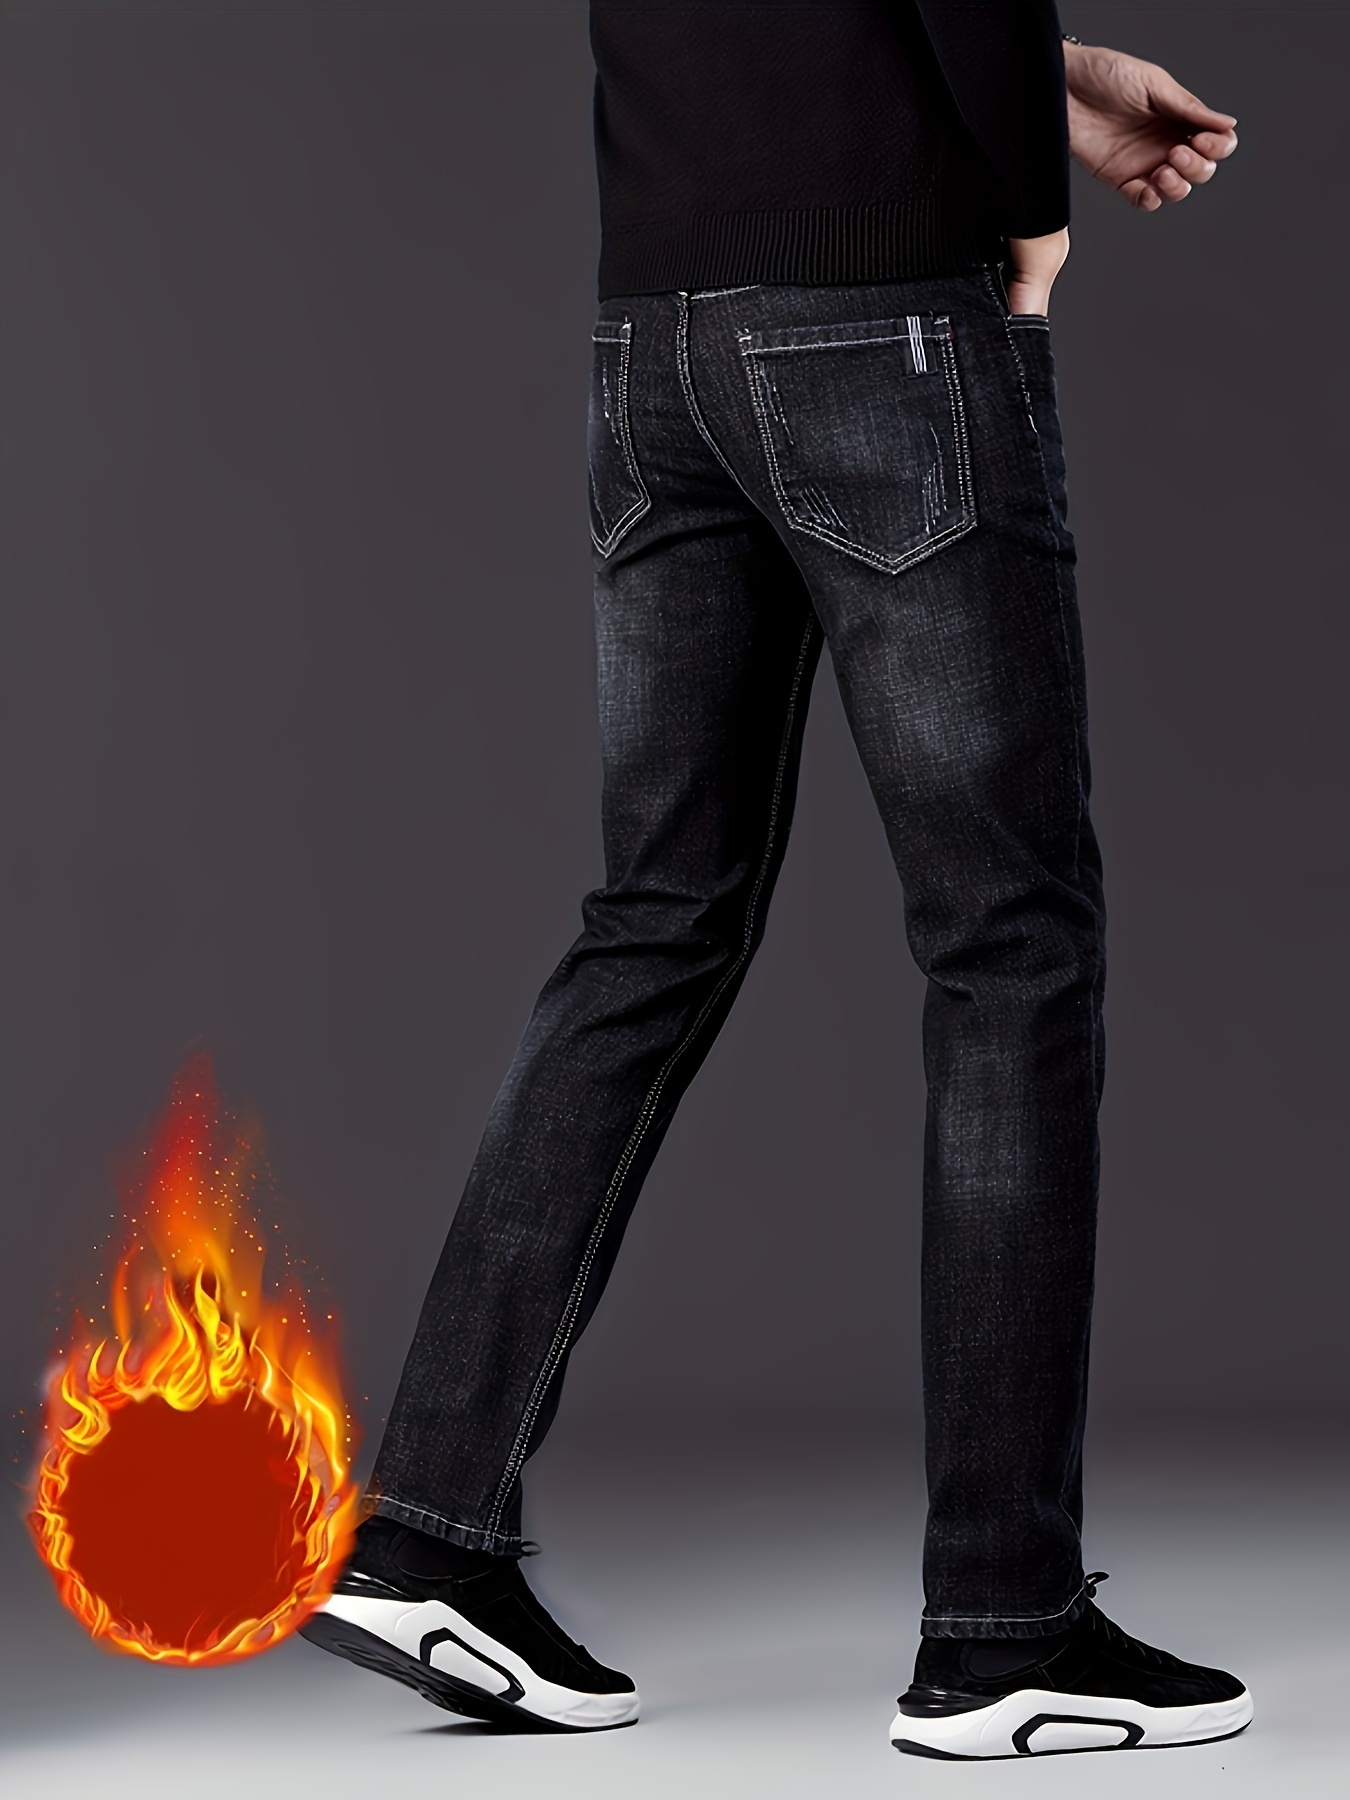 Jeans & Pants, 2 Semi Formal Pant For Men